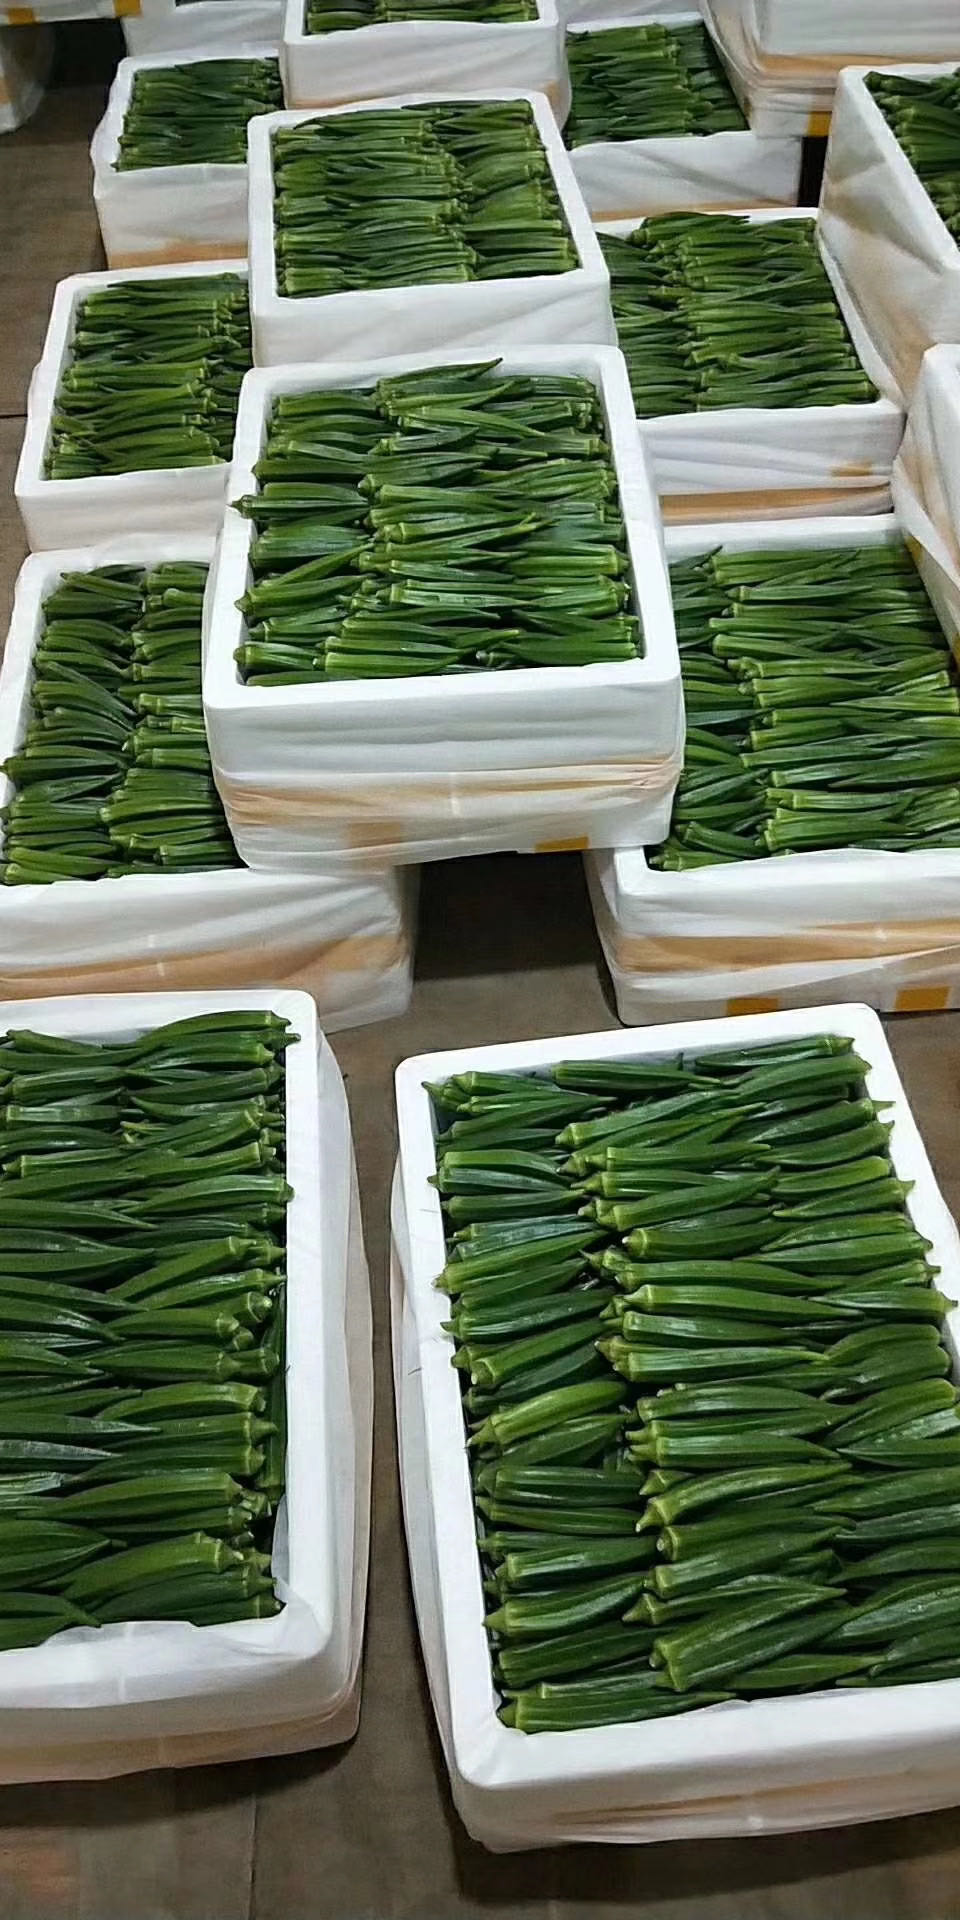 漳州黄秋葵水果型  种植大户 自家冻库收购 支持全国物流发货